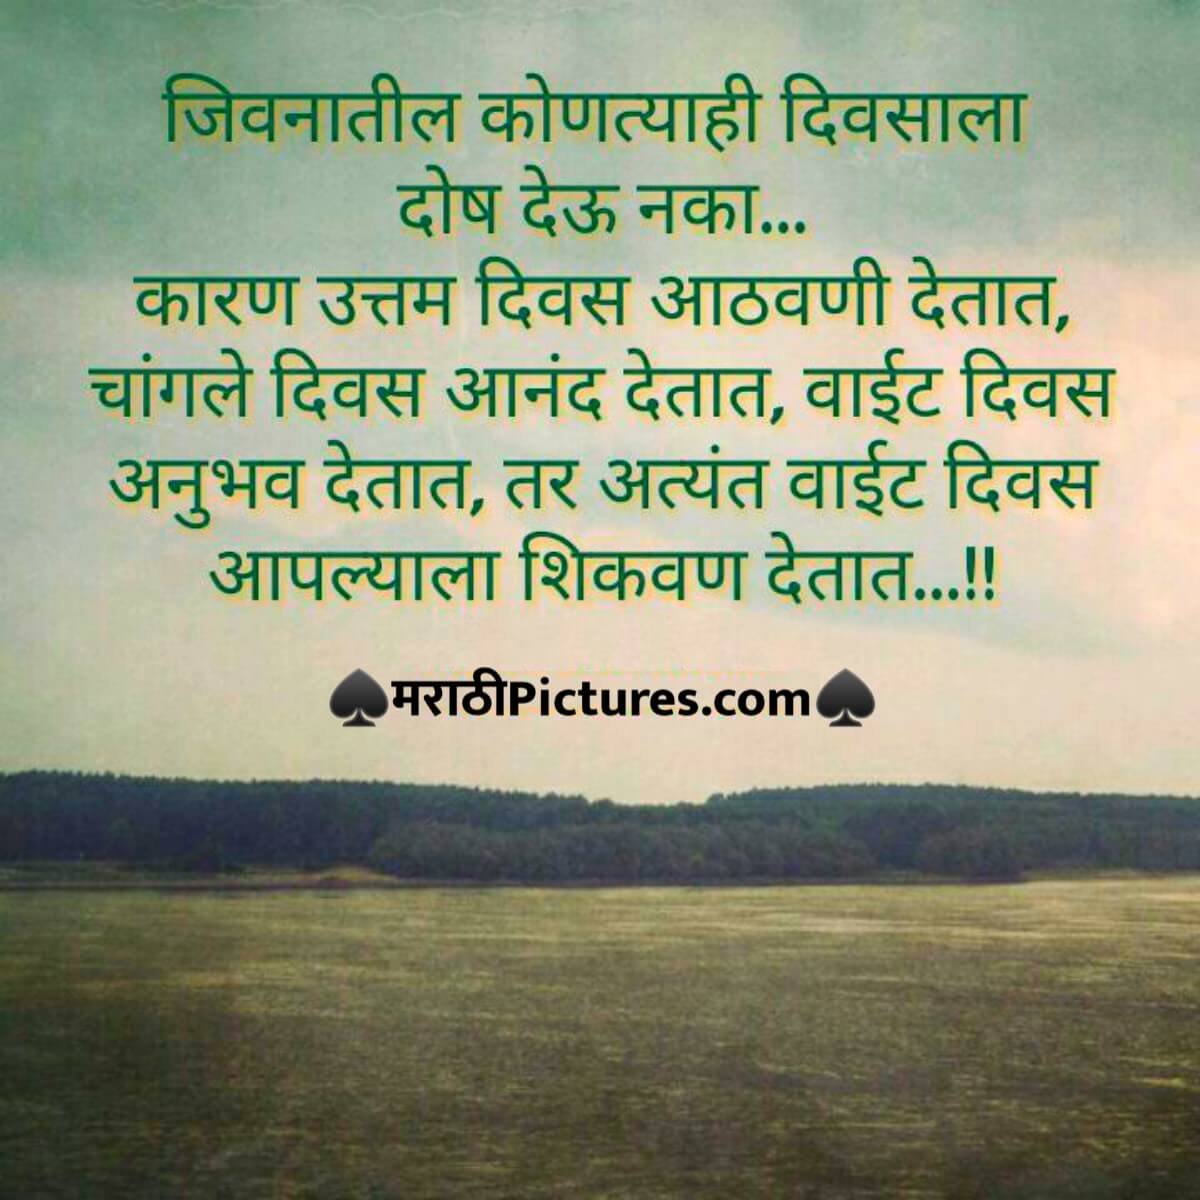 Jivan.. Marathi live life happy quotes